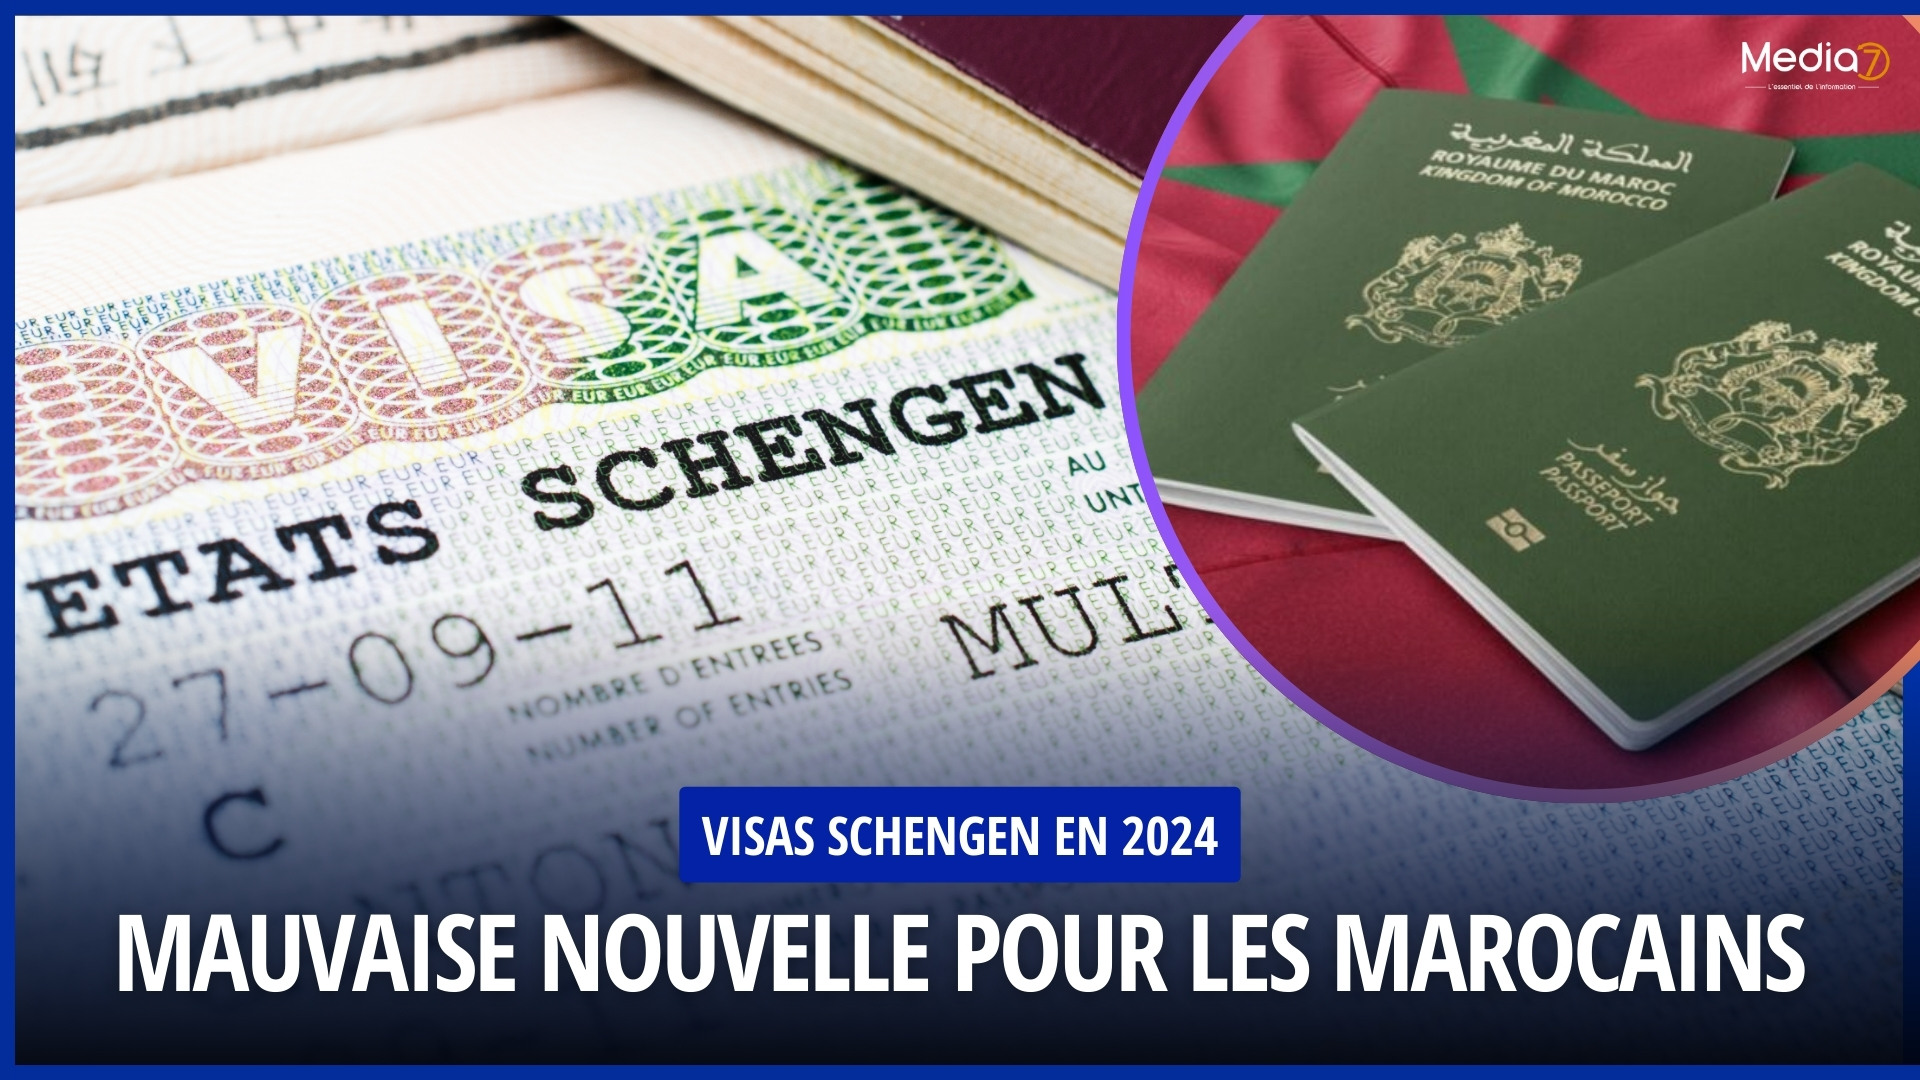 Schengen Visas: Bad News for Moroccans in 2024